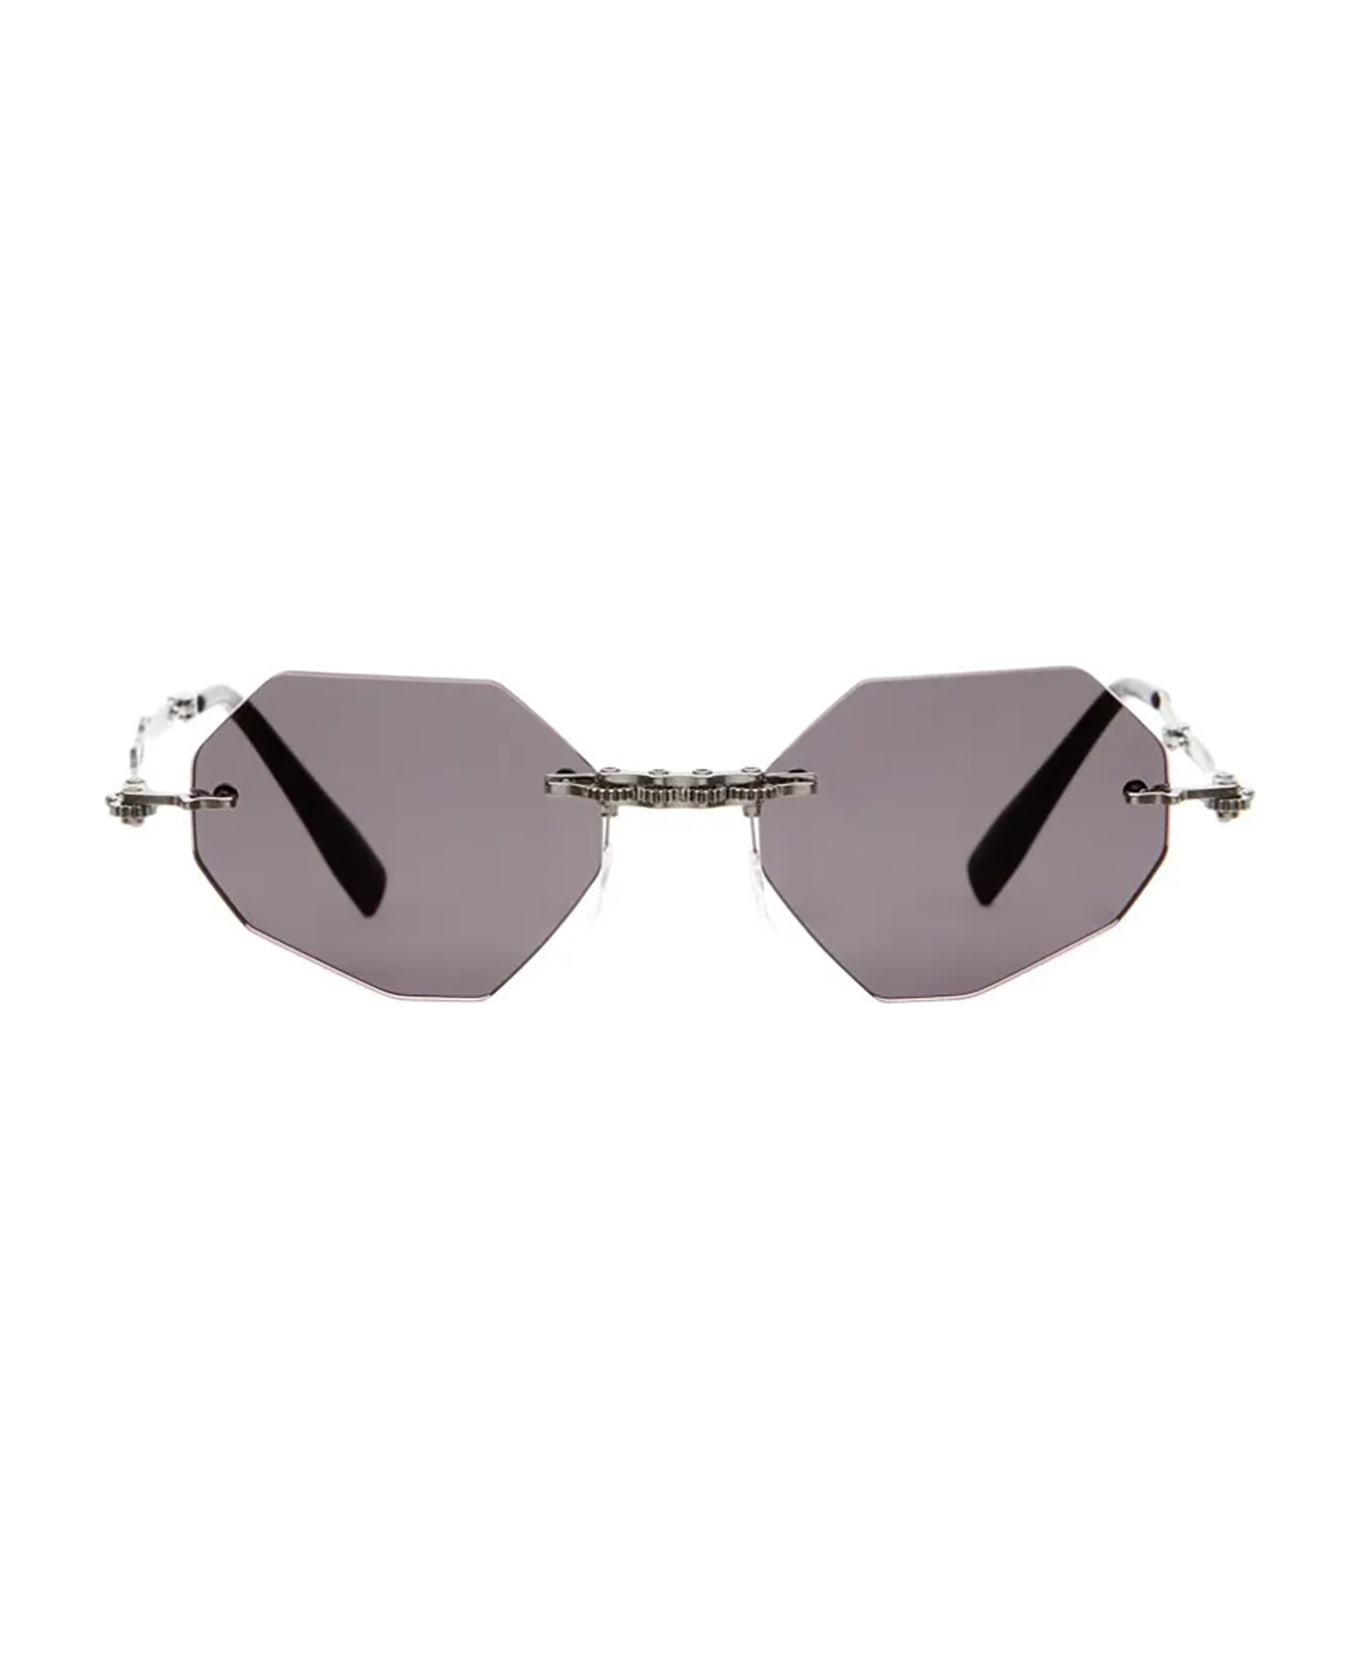 Kuboraum H44 Sunglasses - Bb Grey サングラス